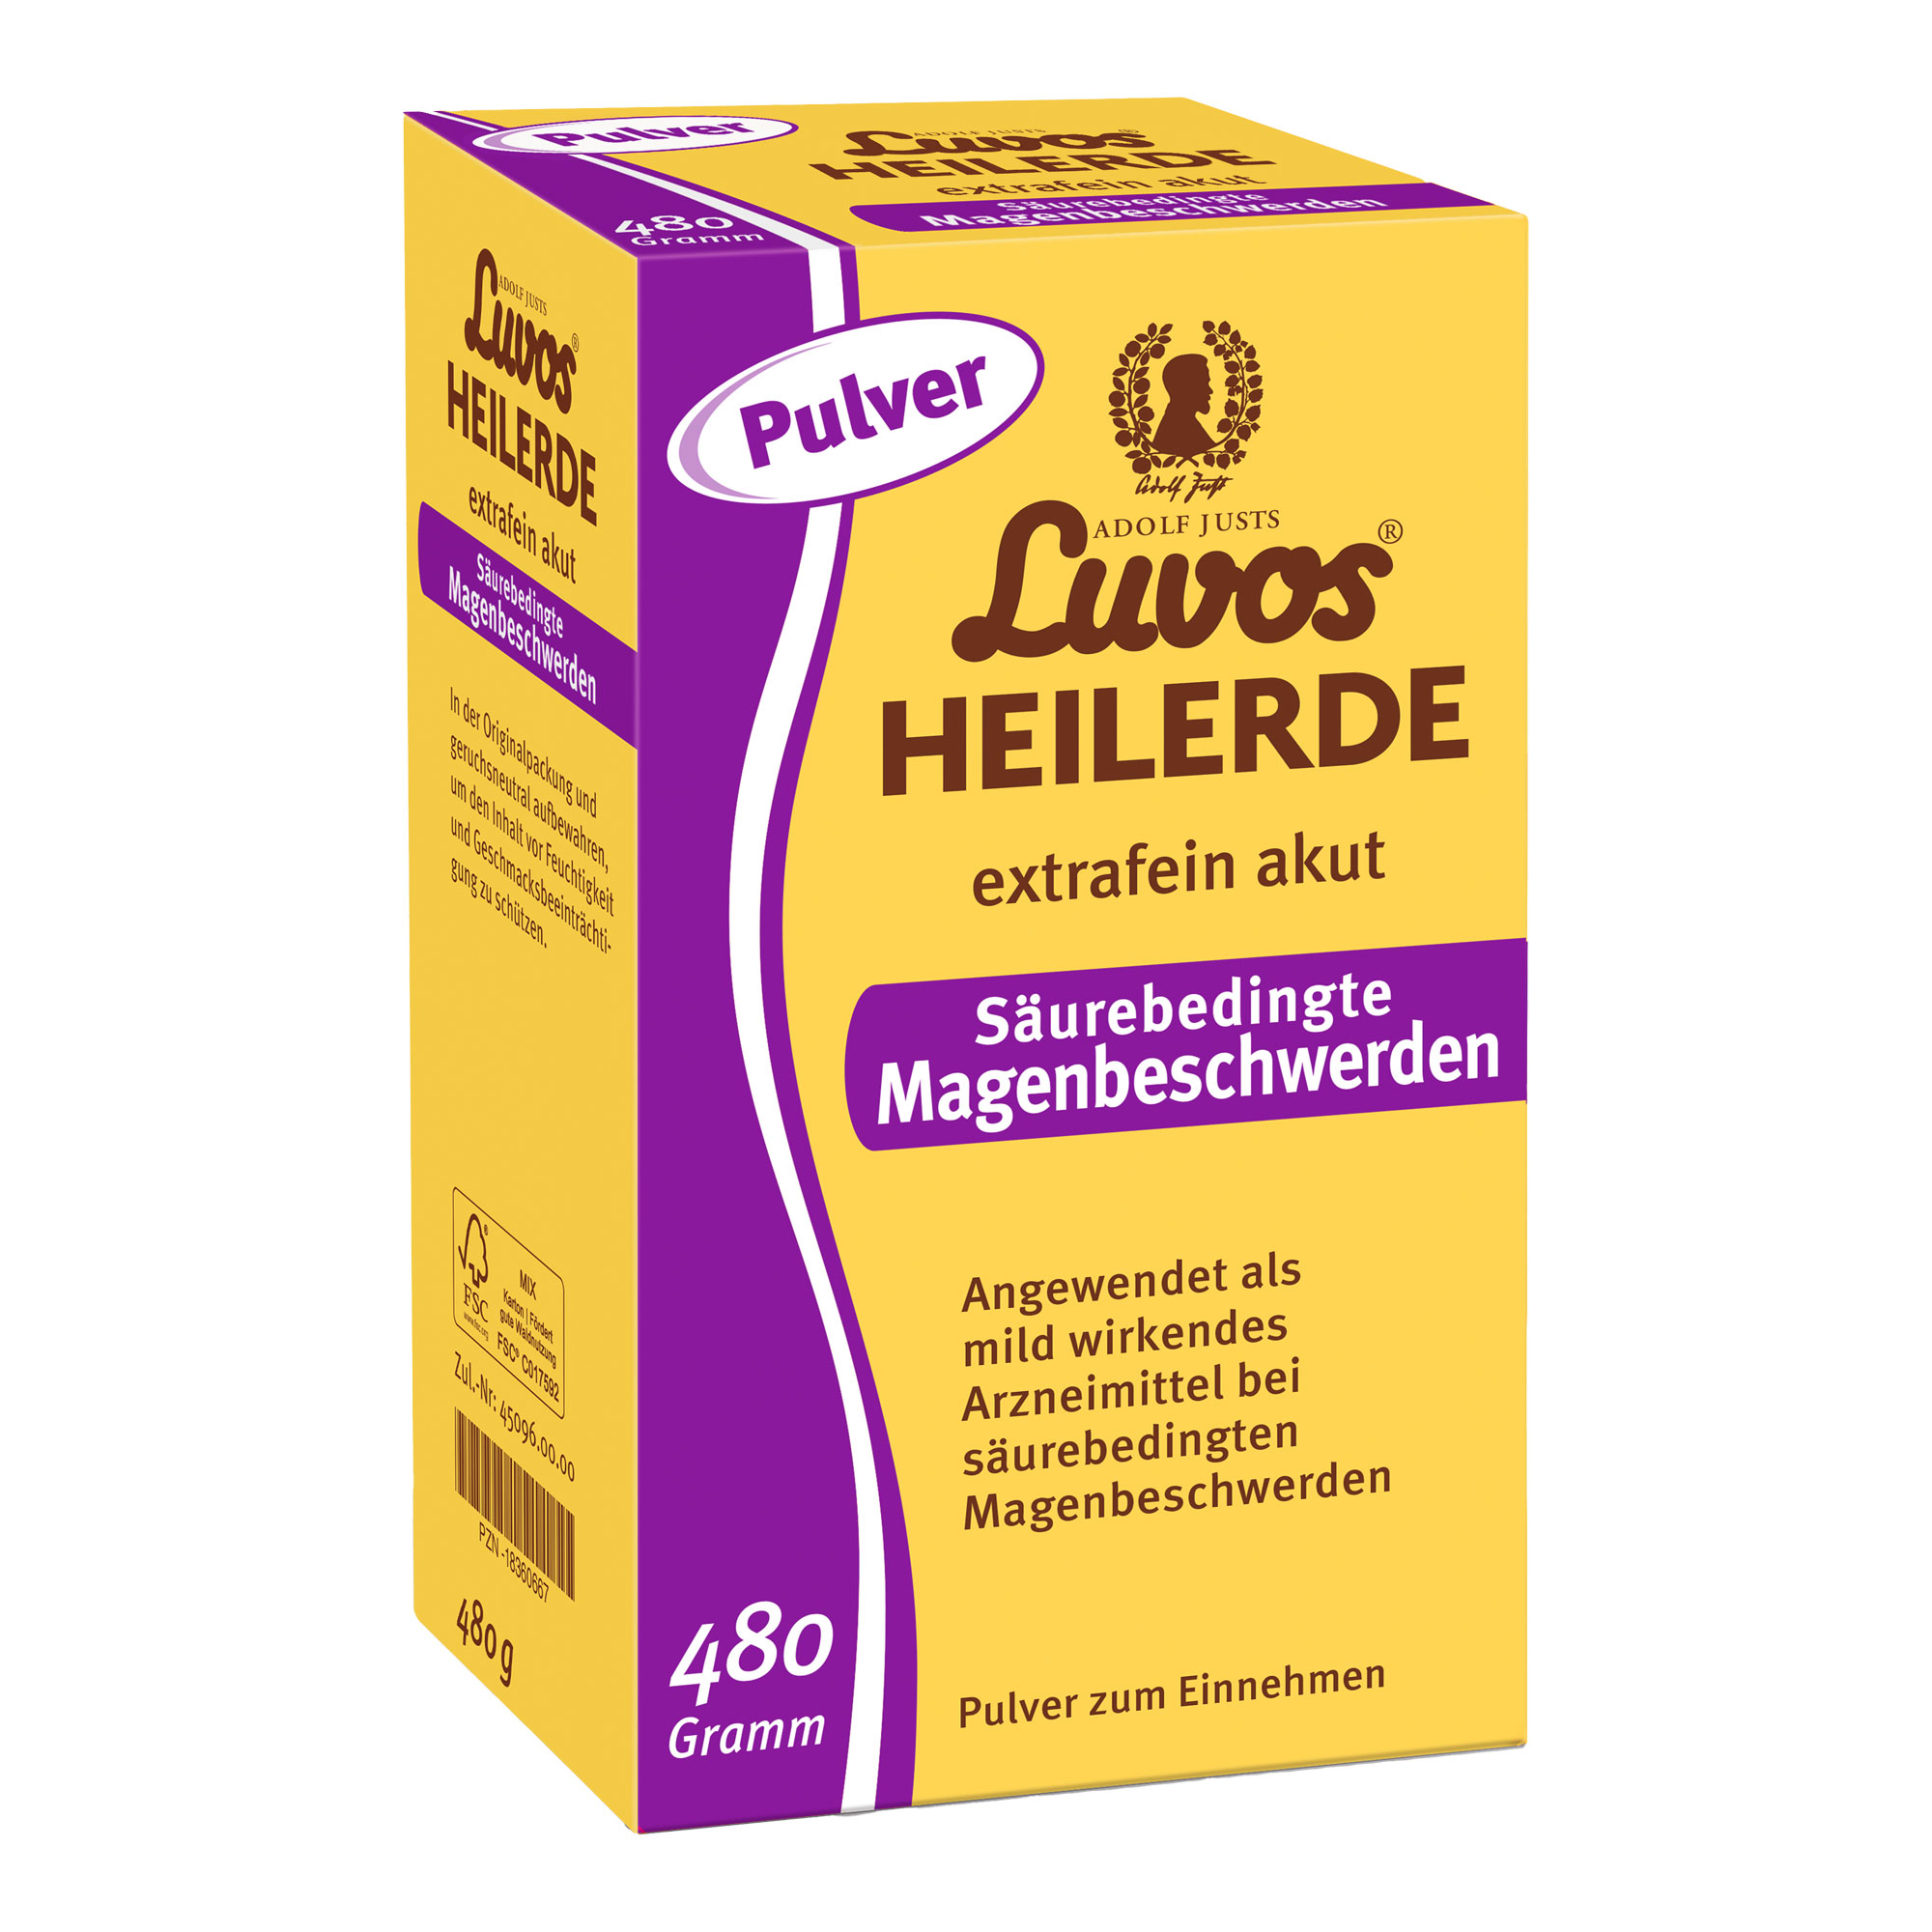 Heilerde-Pulver zur Einnahme bei säurebedingten Magenbeschwerden.